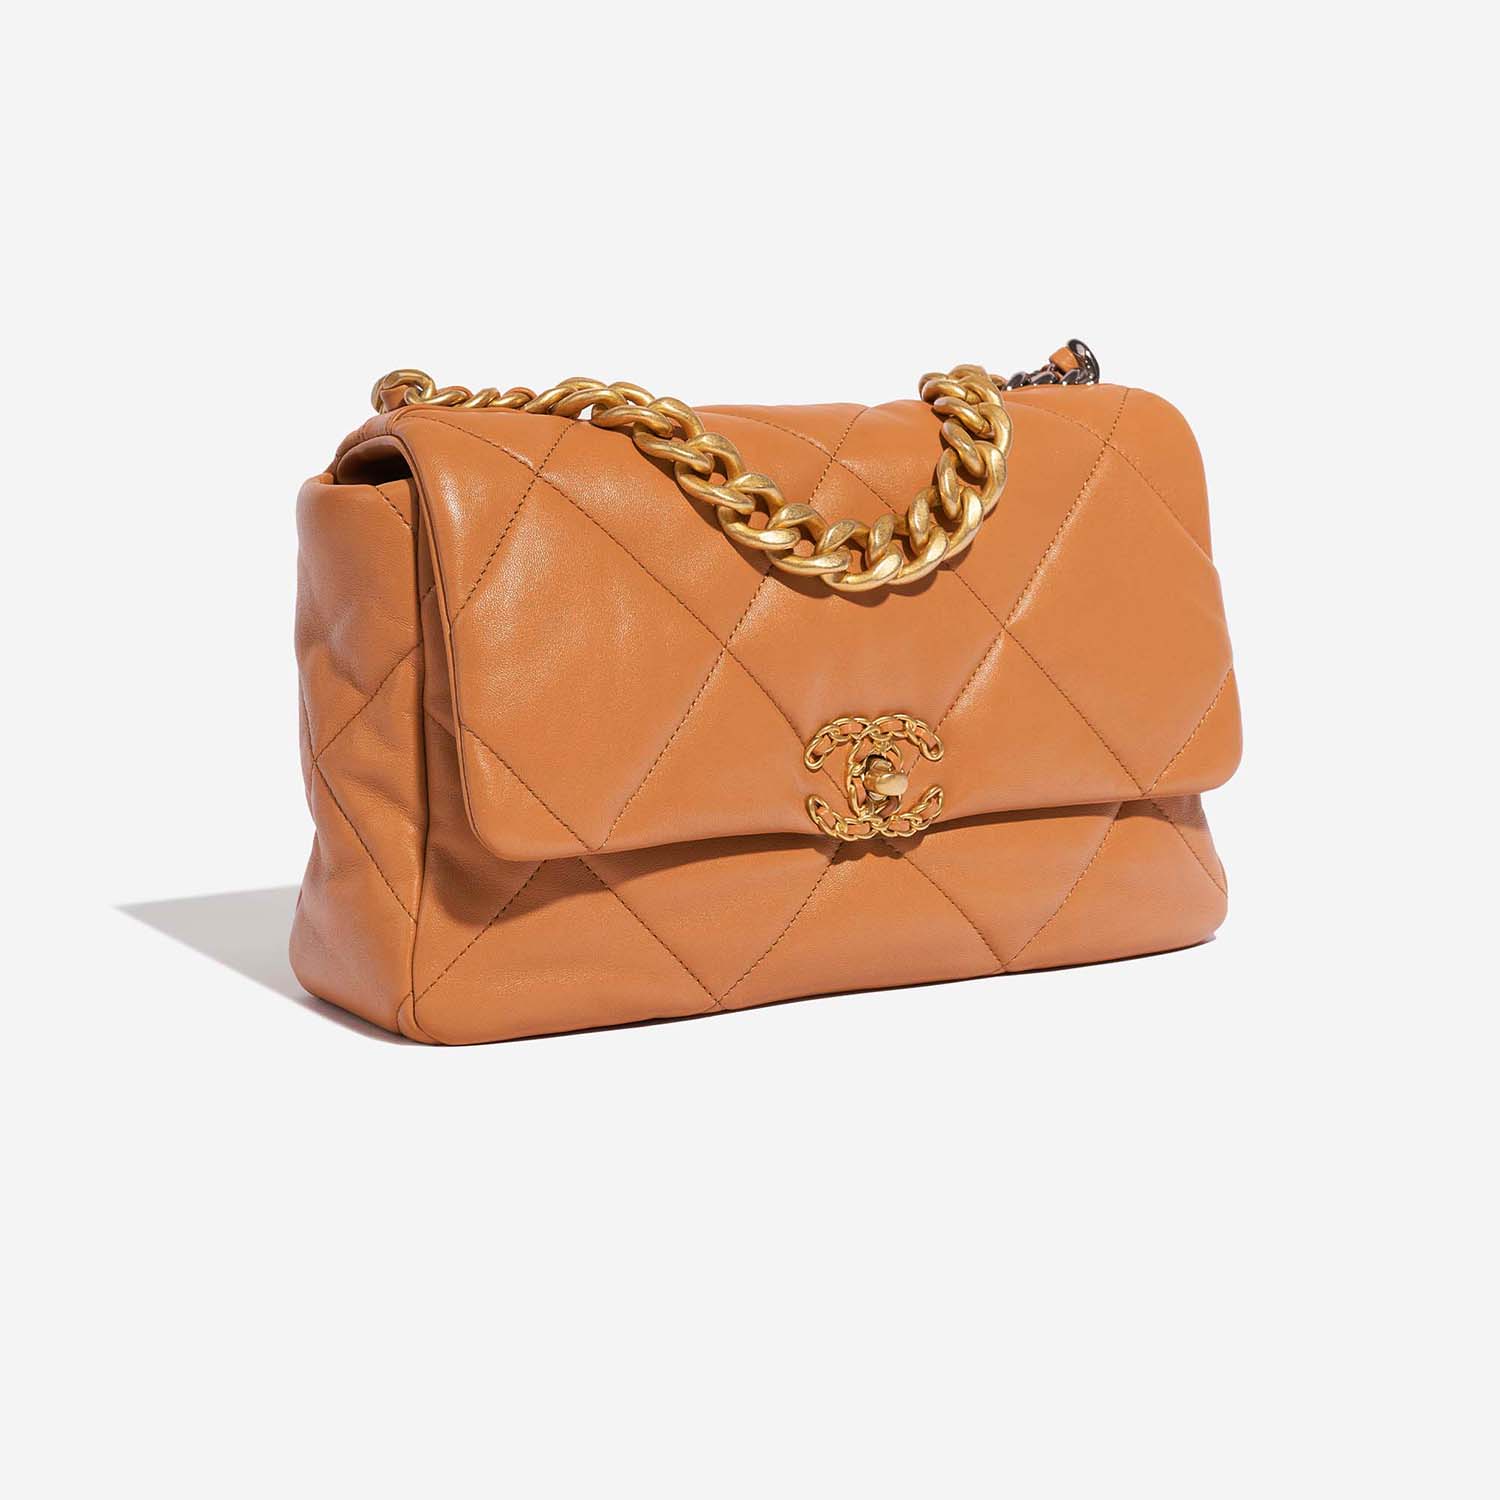 Chanel 19 Large Flap Bag Cognac Side Front  | Sell your designer bag on Saclab.com